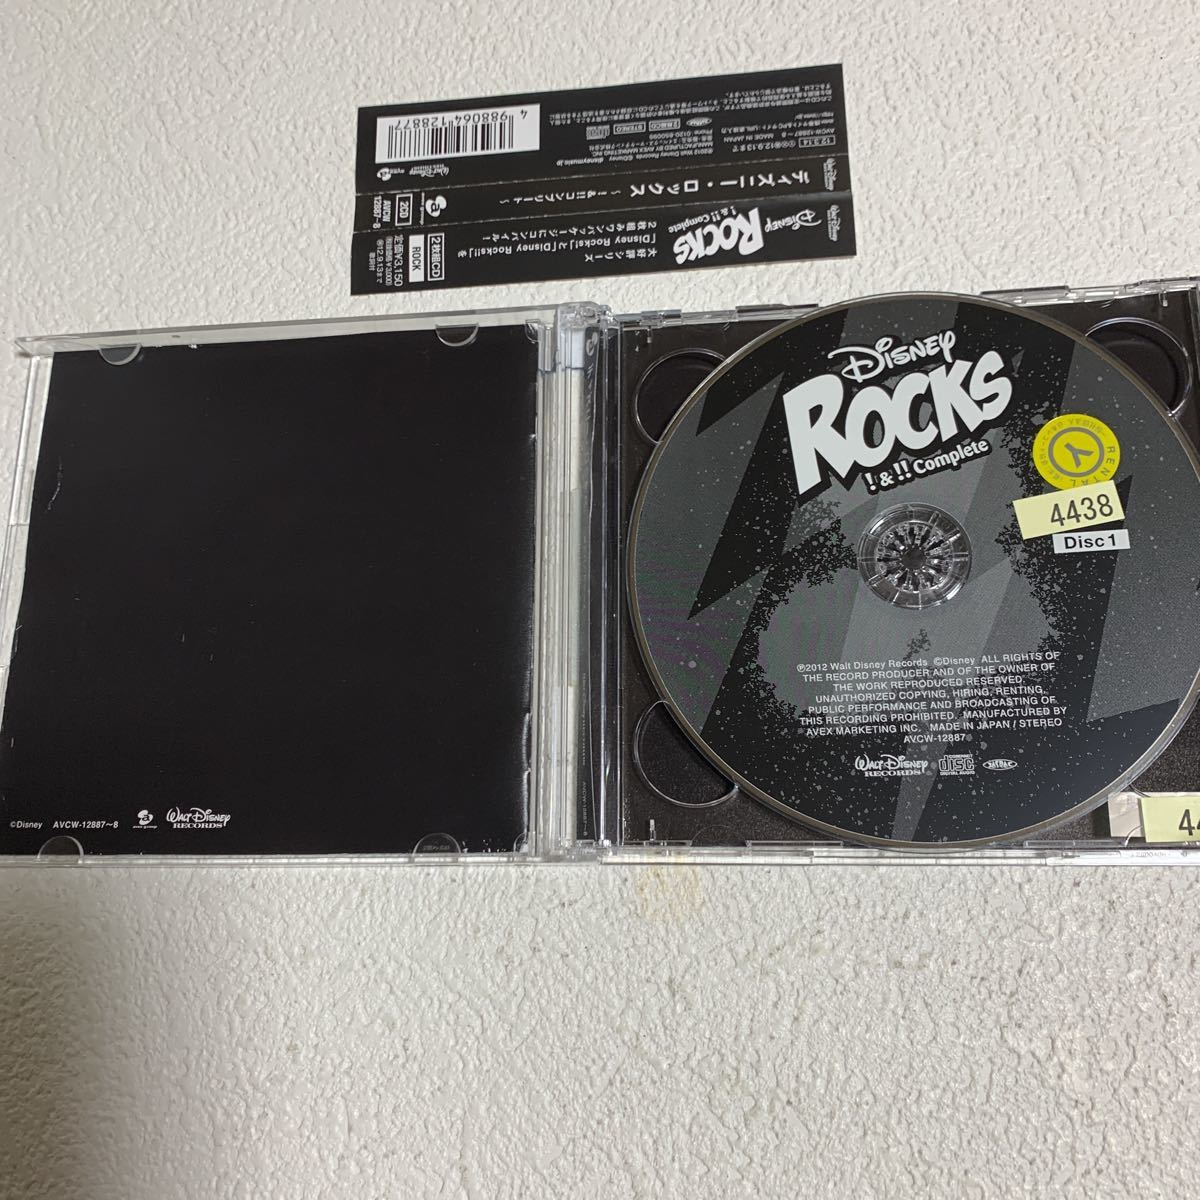 ディズニー・ロックス大好評シリーズ ROCKS !&!! Complete [Disney Rocks!]2枚組みワンパッケージにコンパイル! レンタル落ち中古CD_画像3